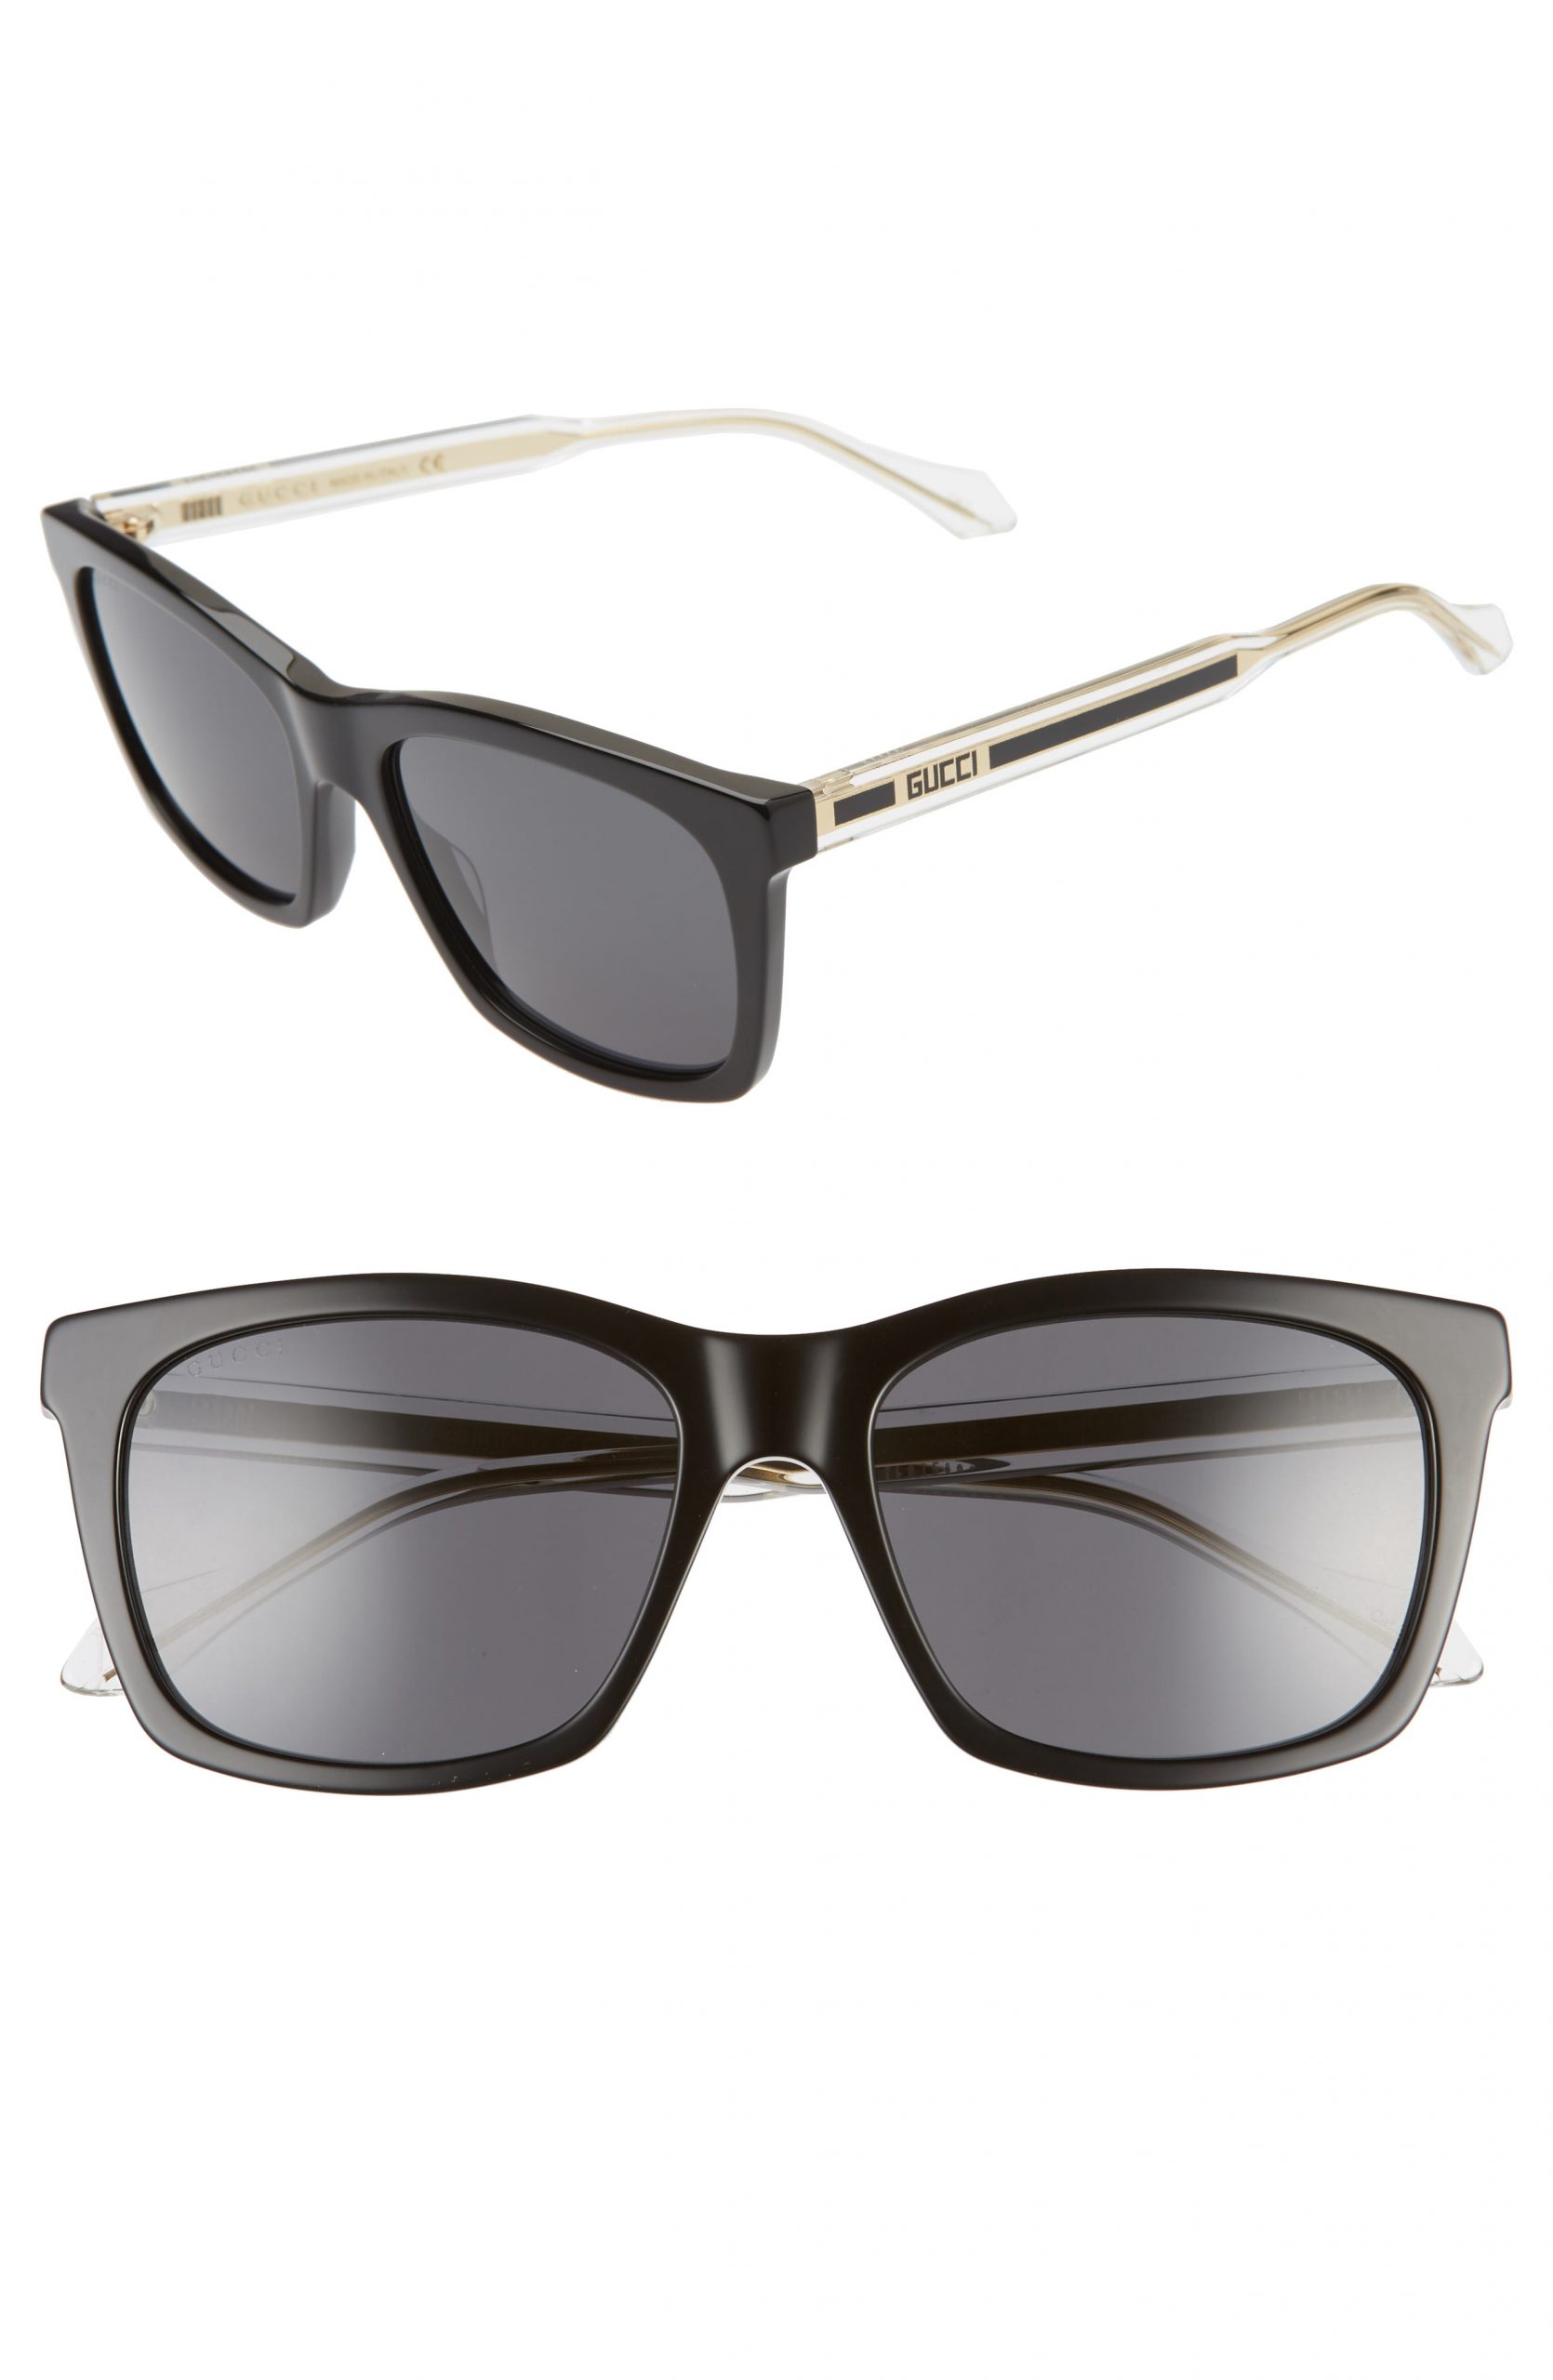 gucci men's square sunglasses